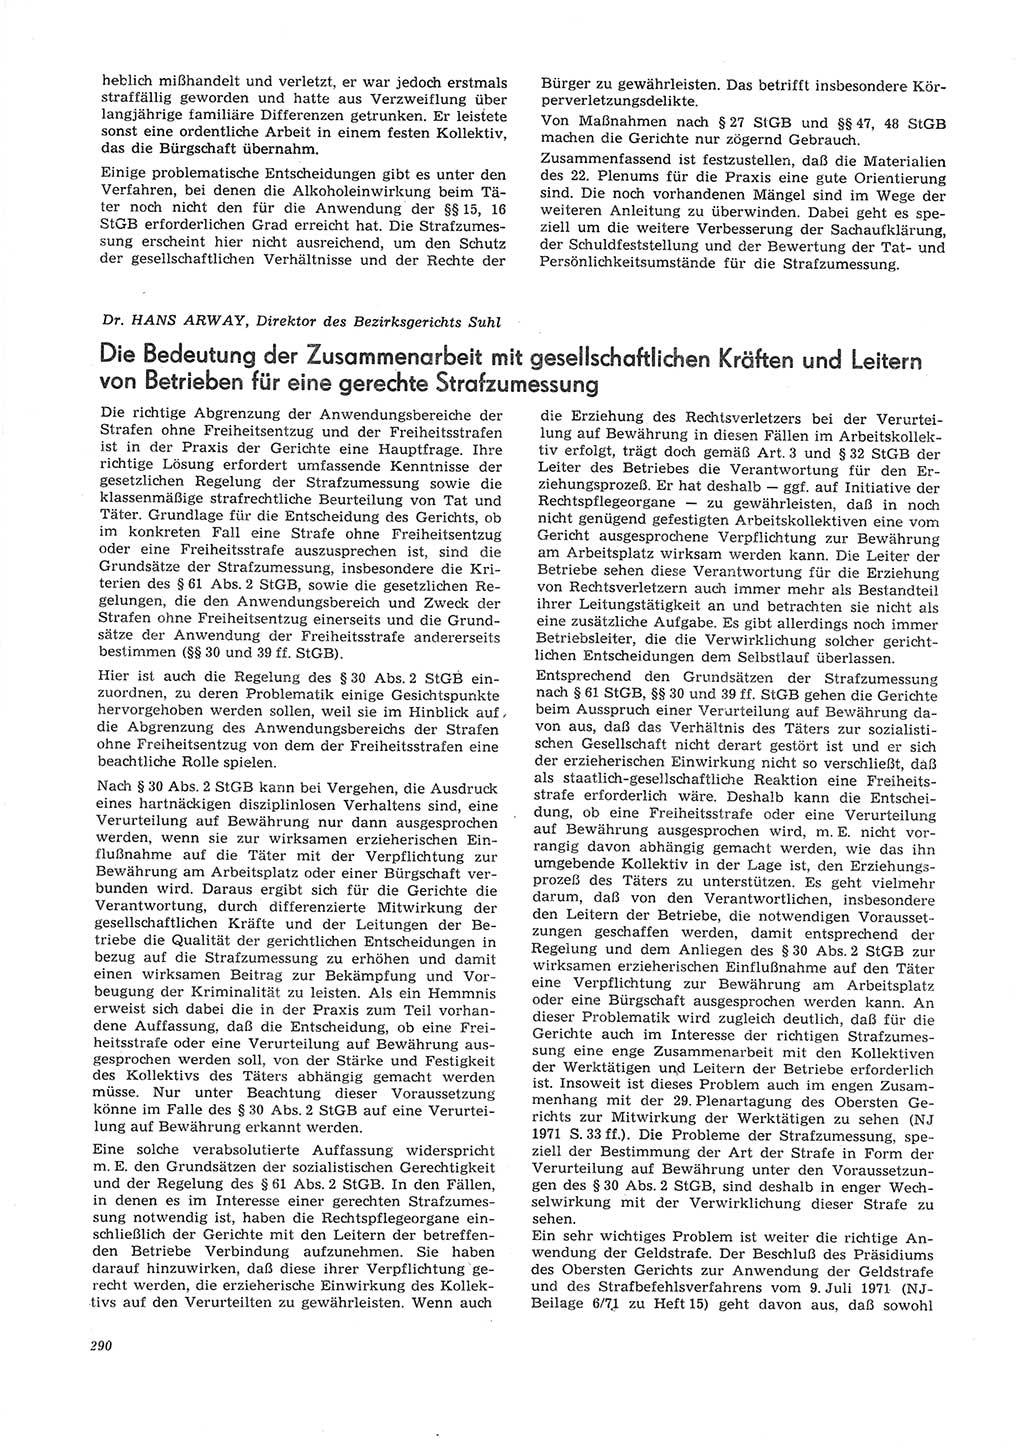 Neue Justiz (NJ), Zeitschrift für Recht und Rechtswissenschaft [Deutsche Demokratische Republik (DDR)], 26. Jahrgang 1972, Seite 290 (NJ DDR 1972, S. 290)